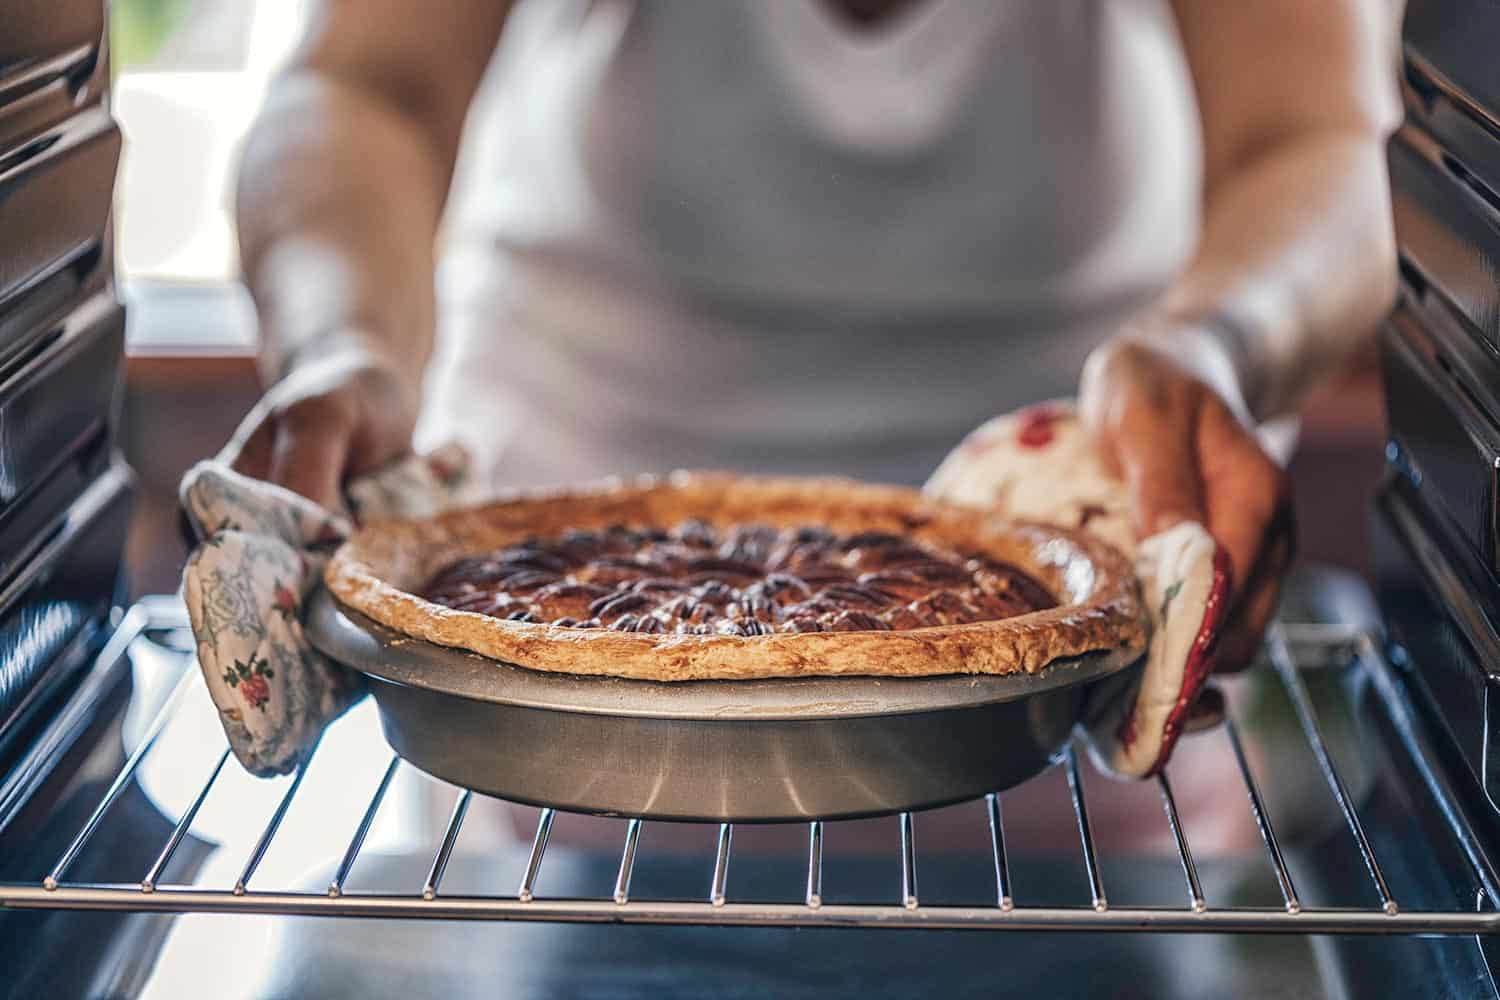 Baking pecan pie in the oven